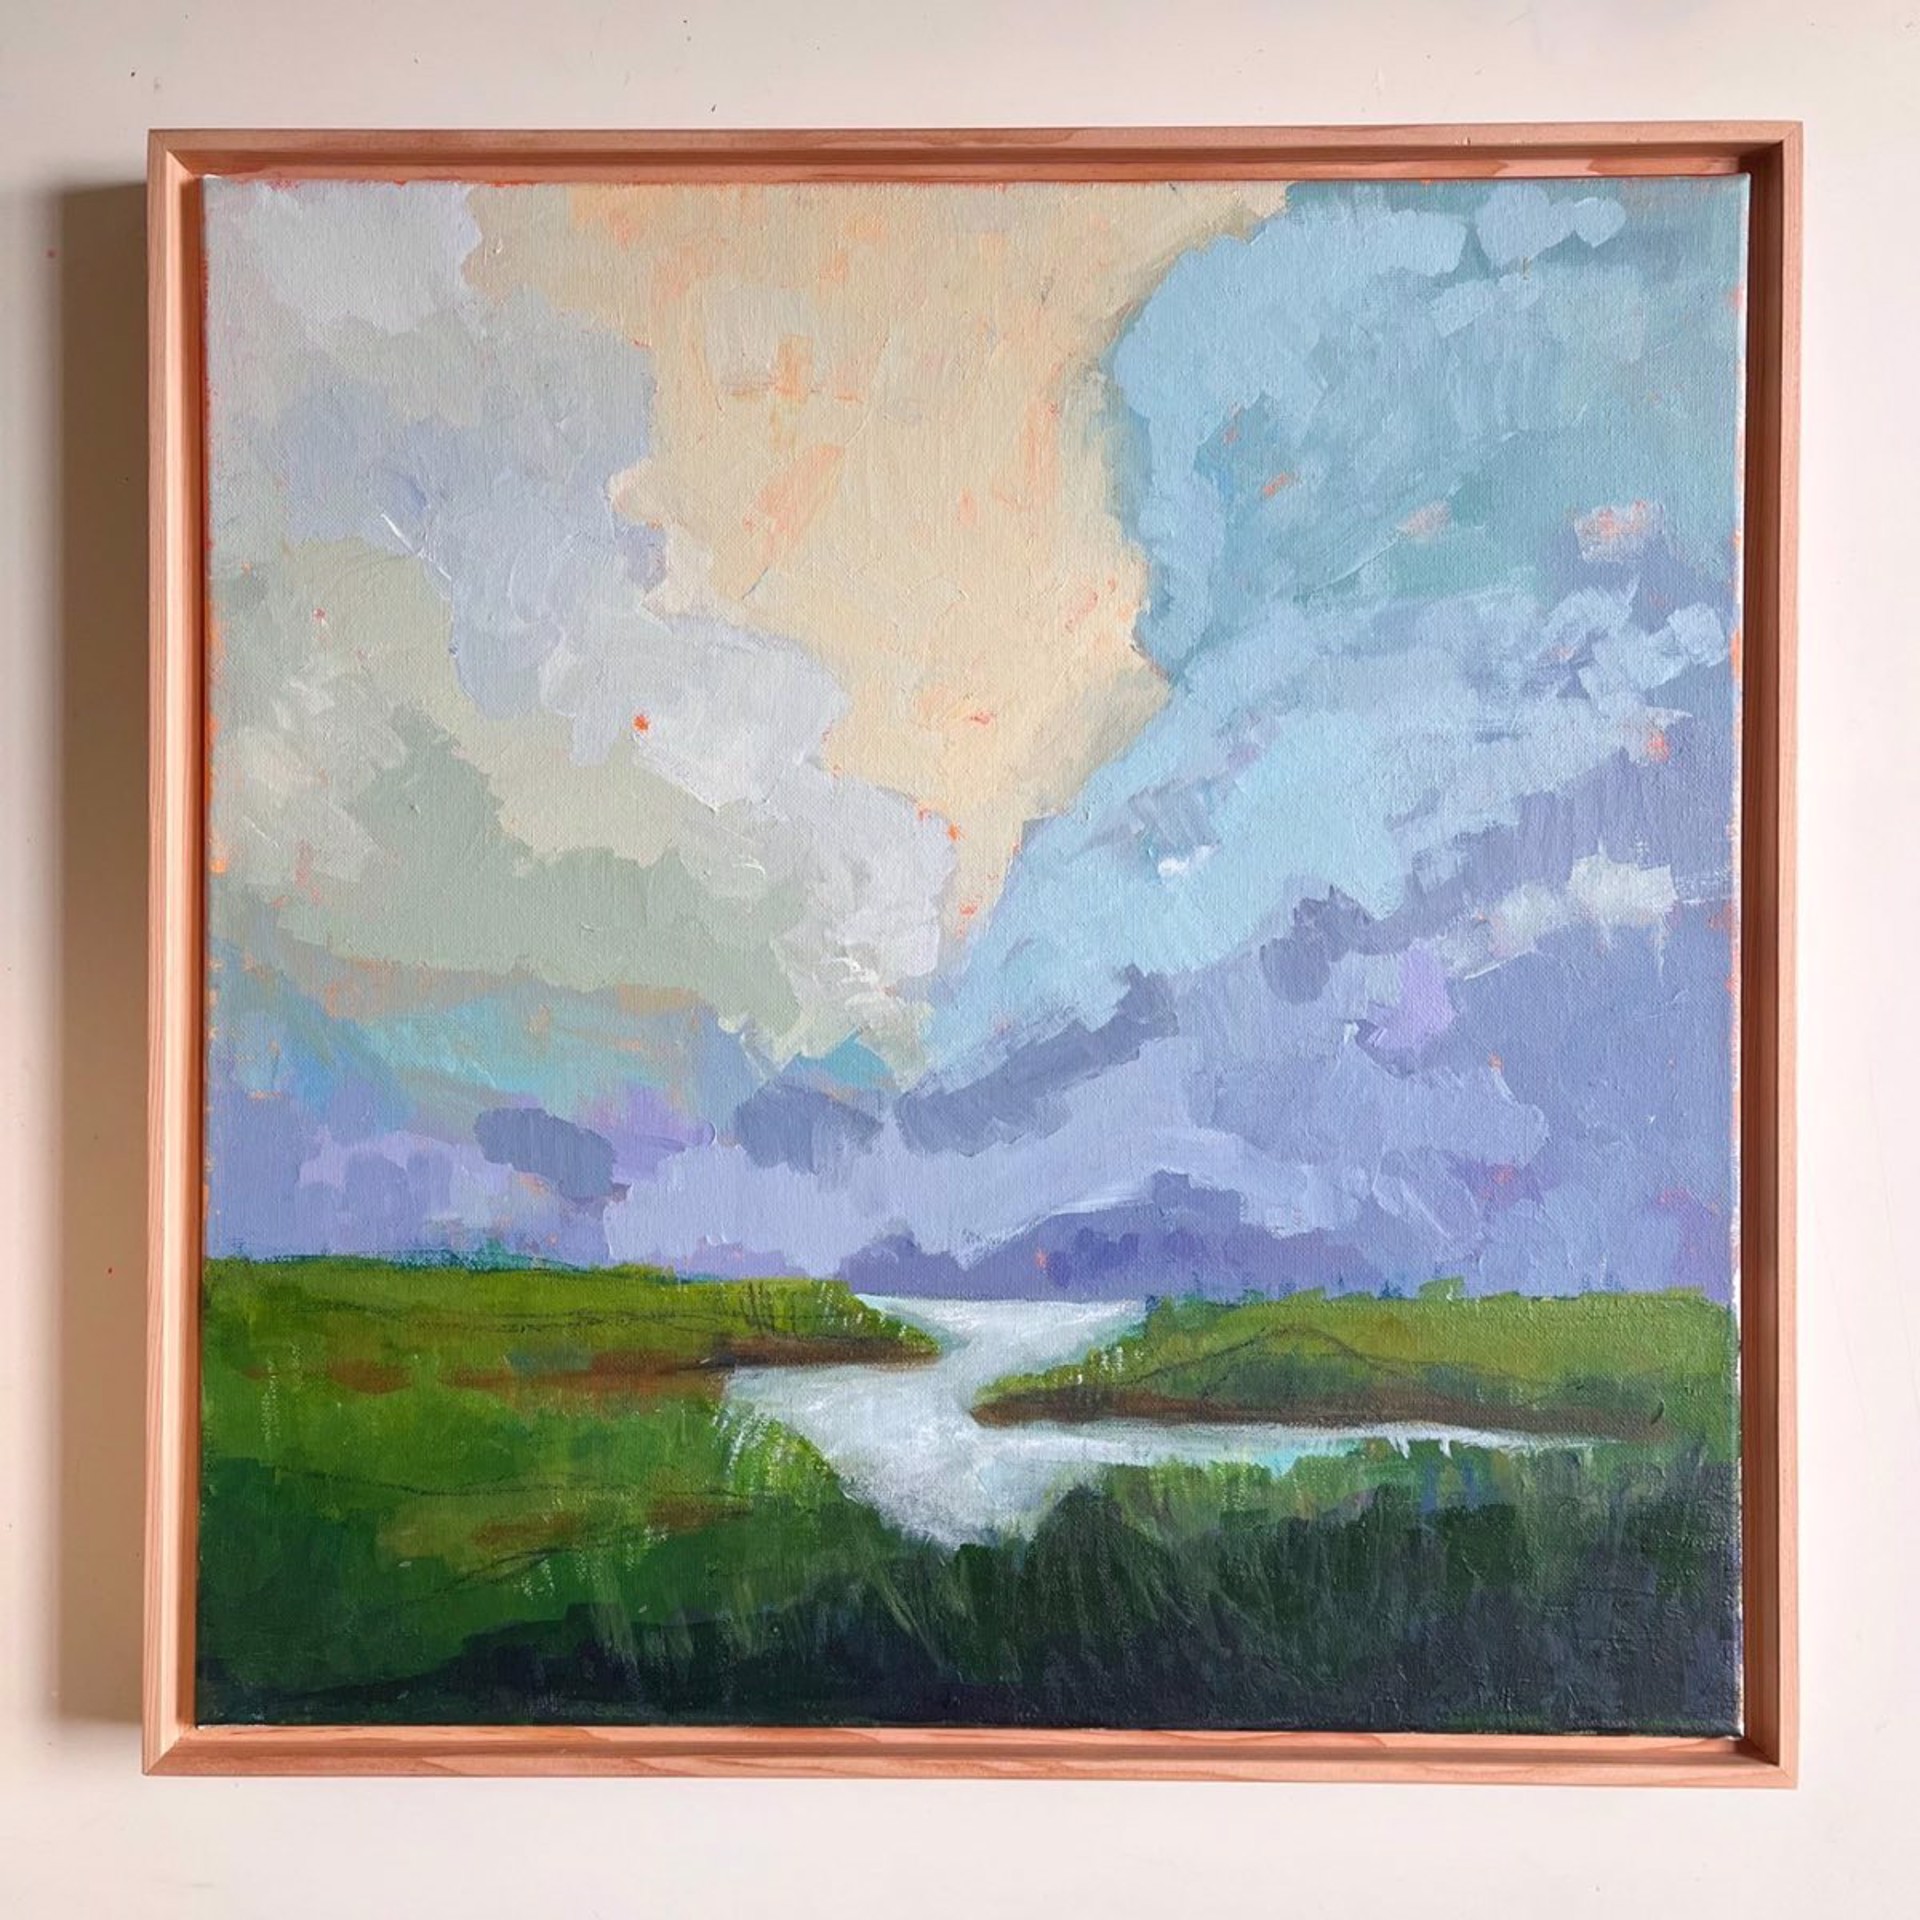 Mobile Bay Delta, framed by Maggie Stickney